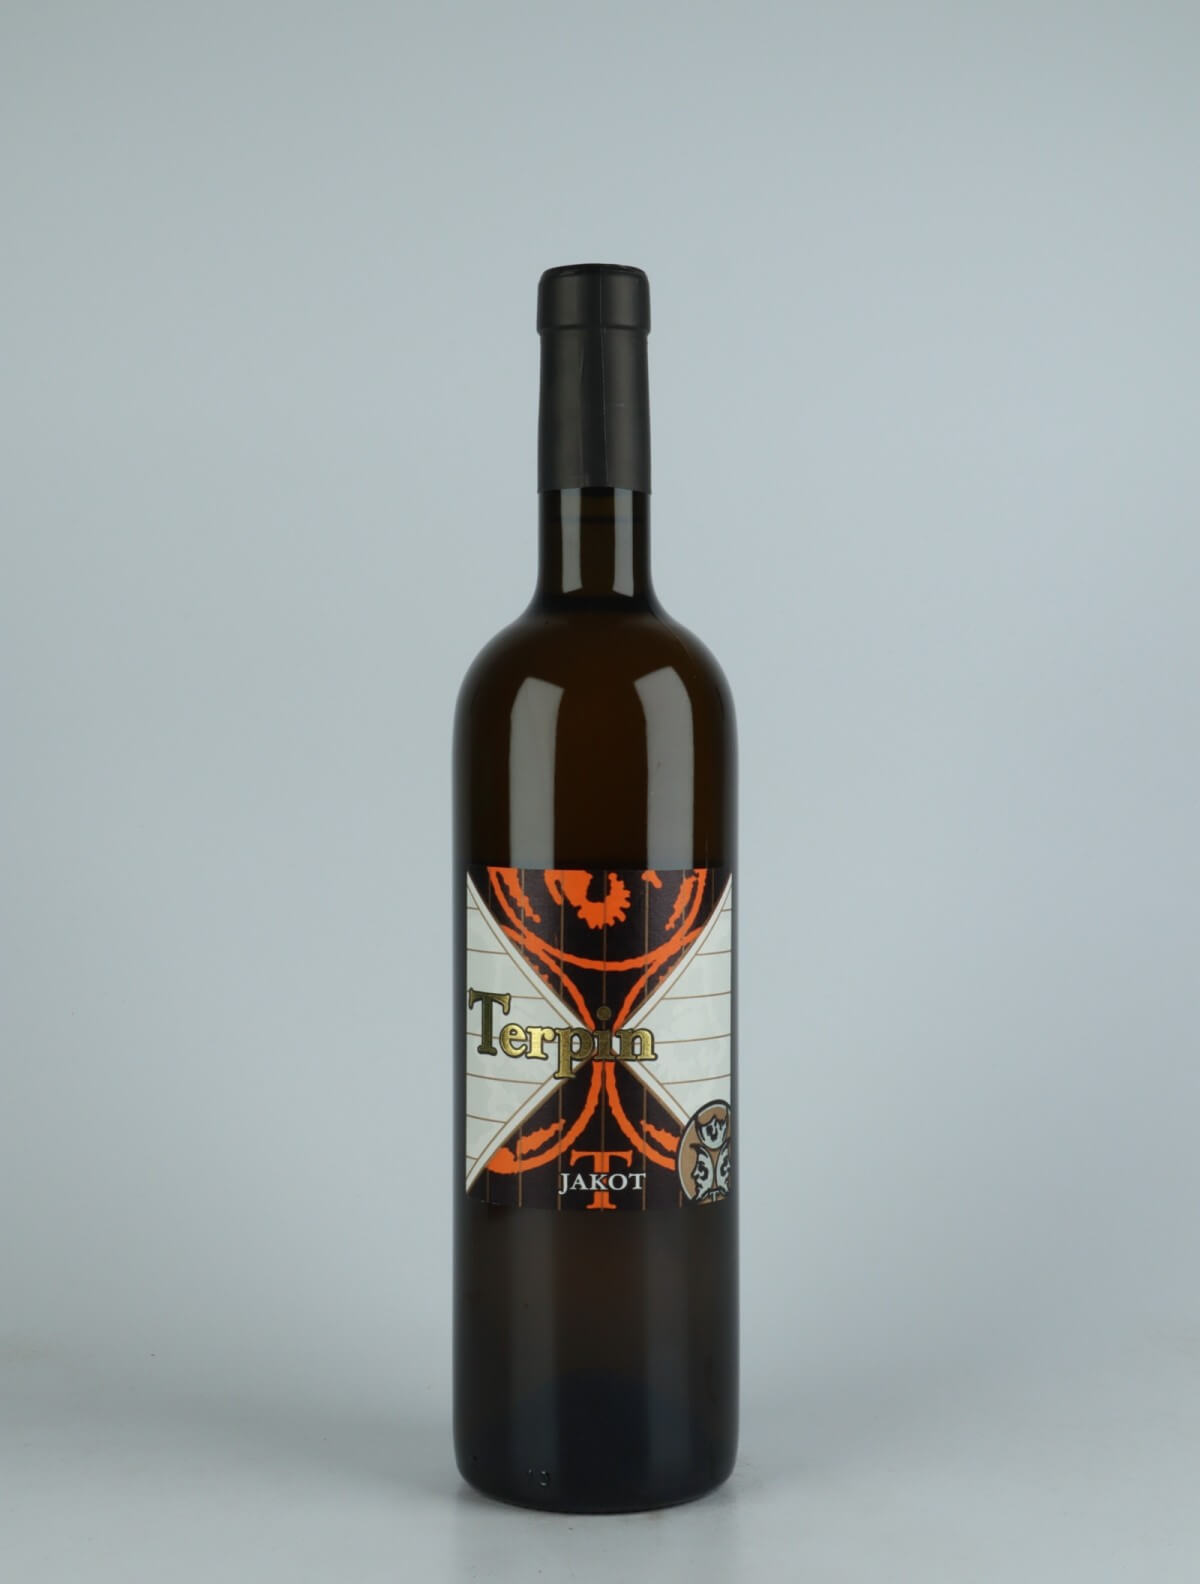 En flaske 2017 Jakot Orange vin fra Franco Terpin, Friuli i Italien